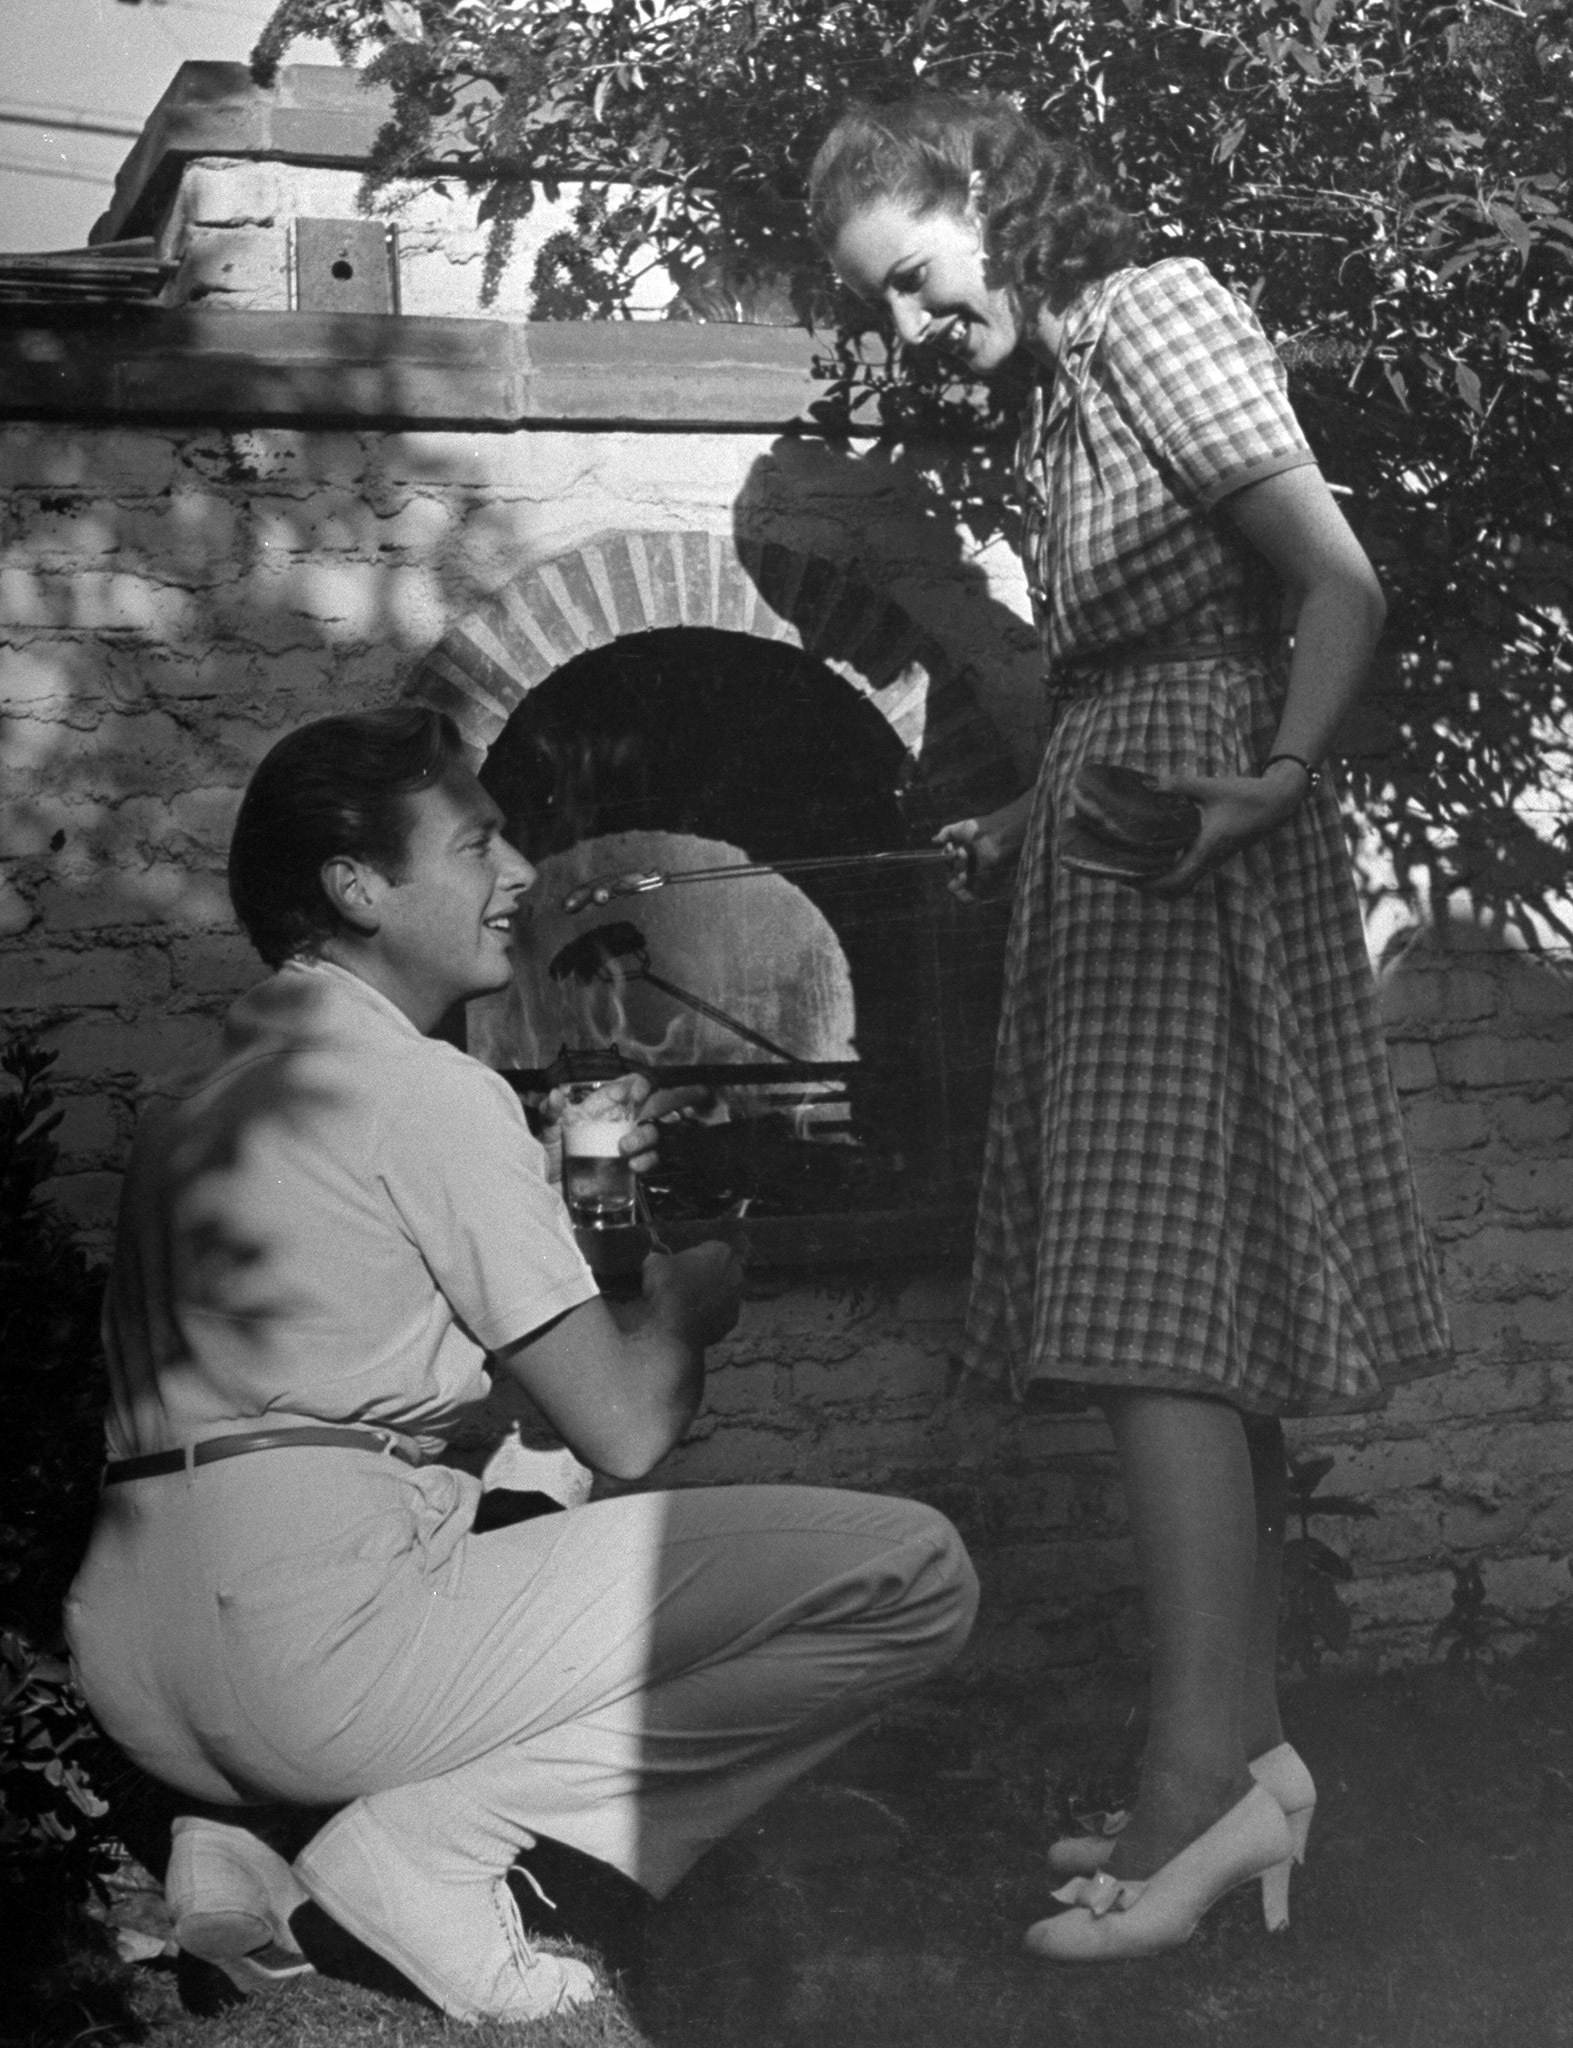 Actress Maureen O'Hara and Rand Brooks at John Hubbard's barbecue, 1940.